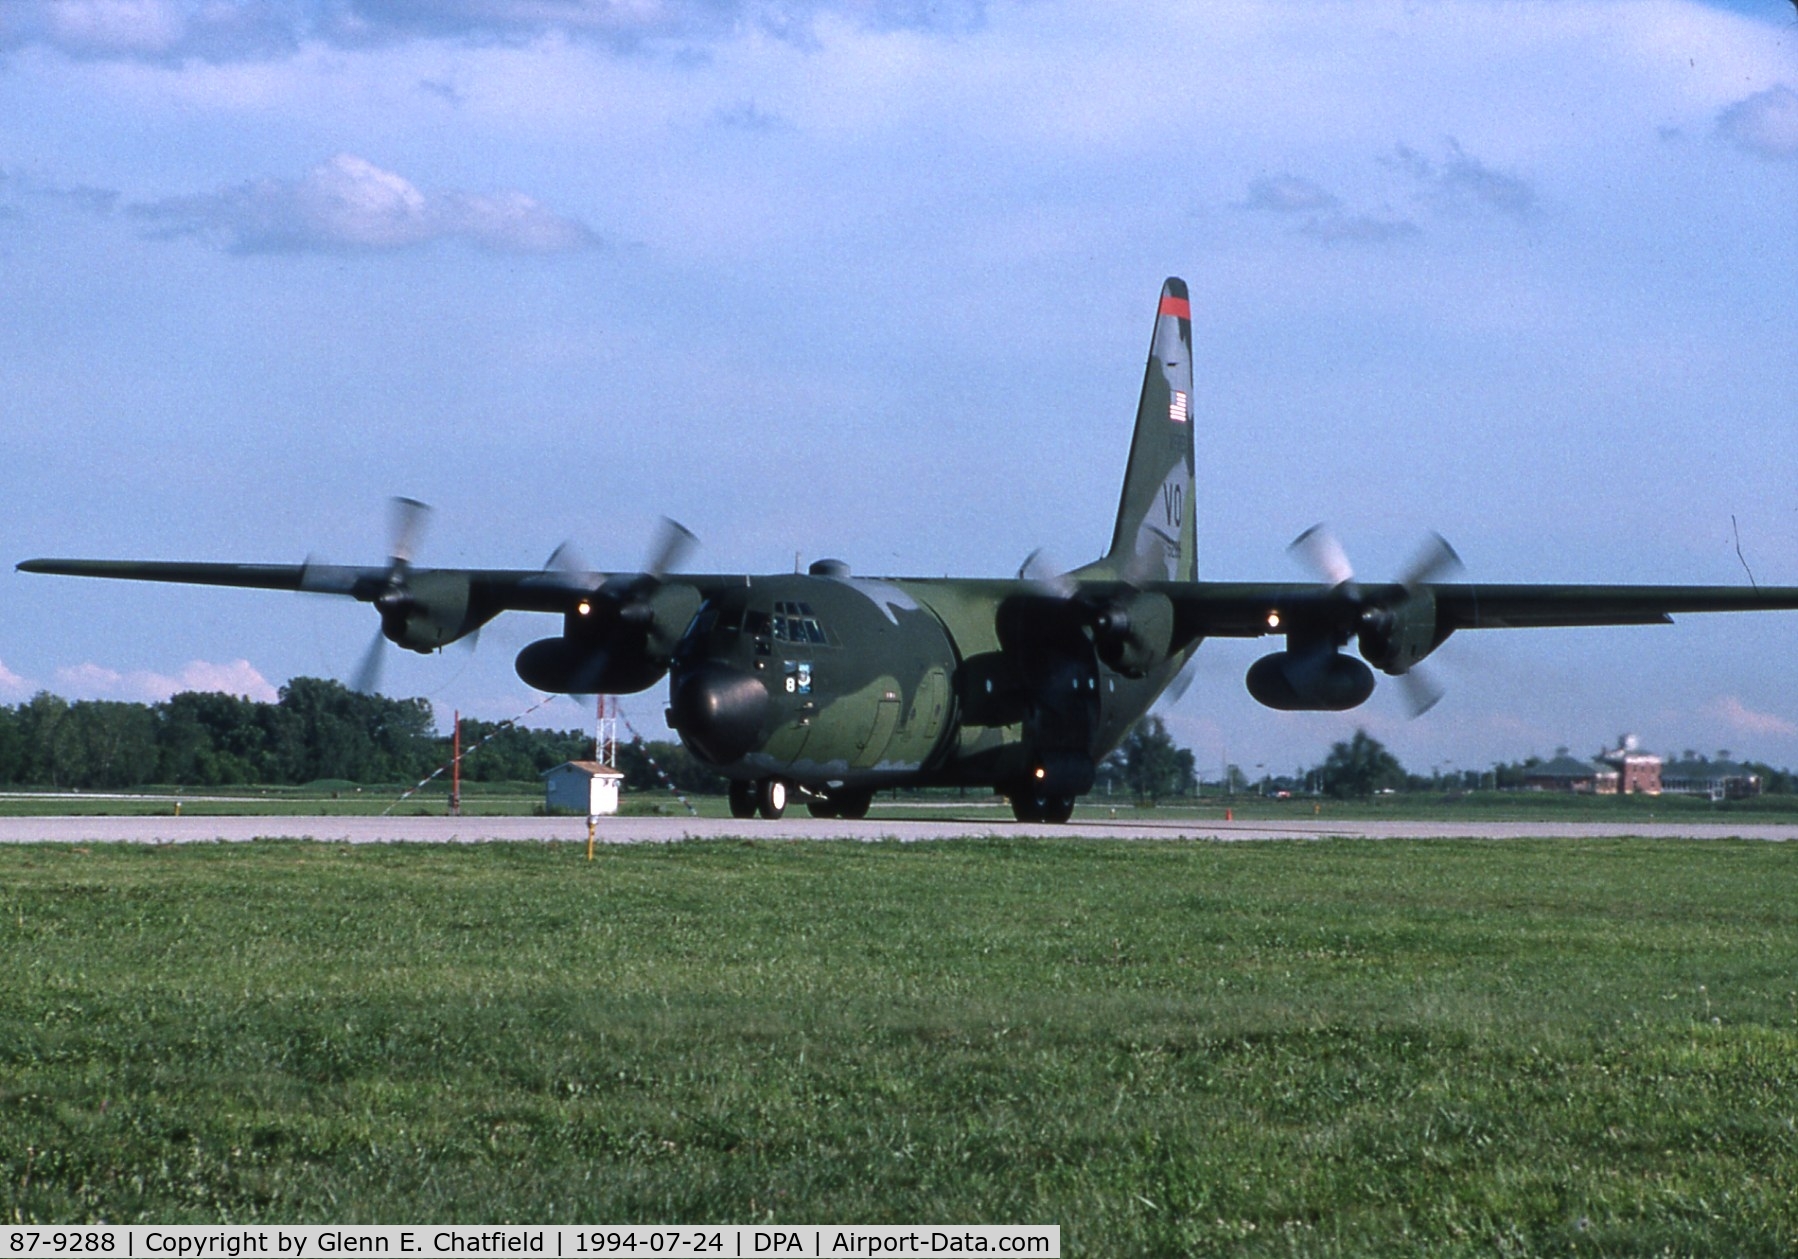 87-9288, 1987 Lockheed C-130H Hercules C/N 382-5129, C-130 at the airshow.